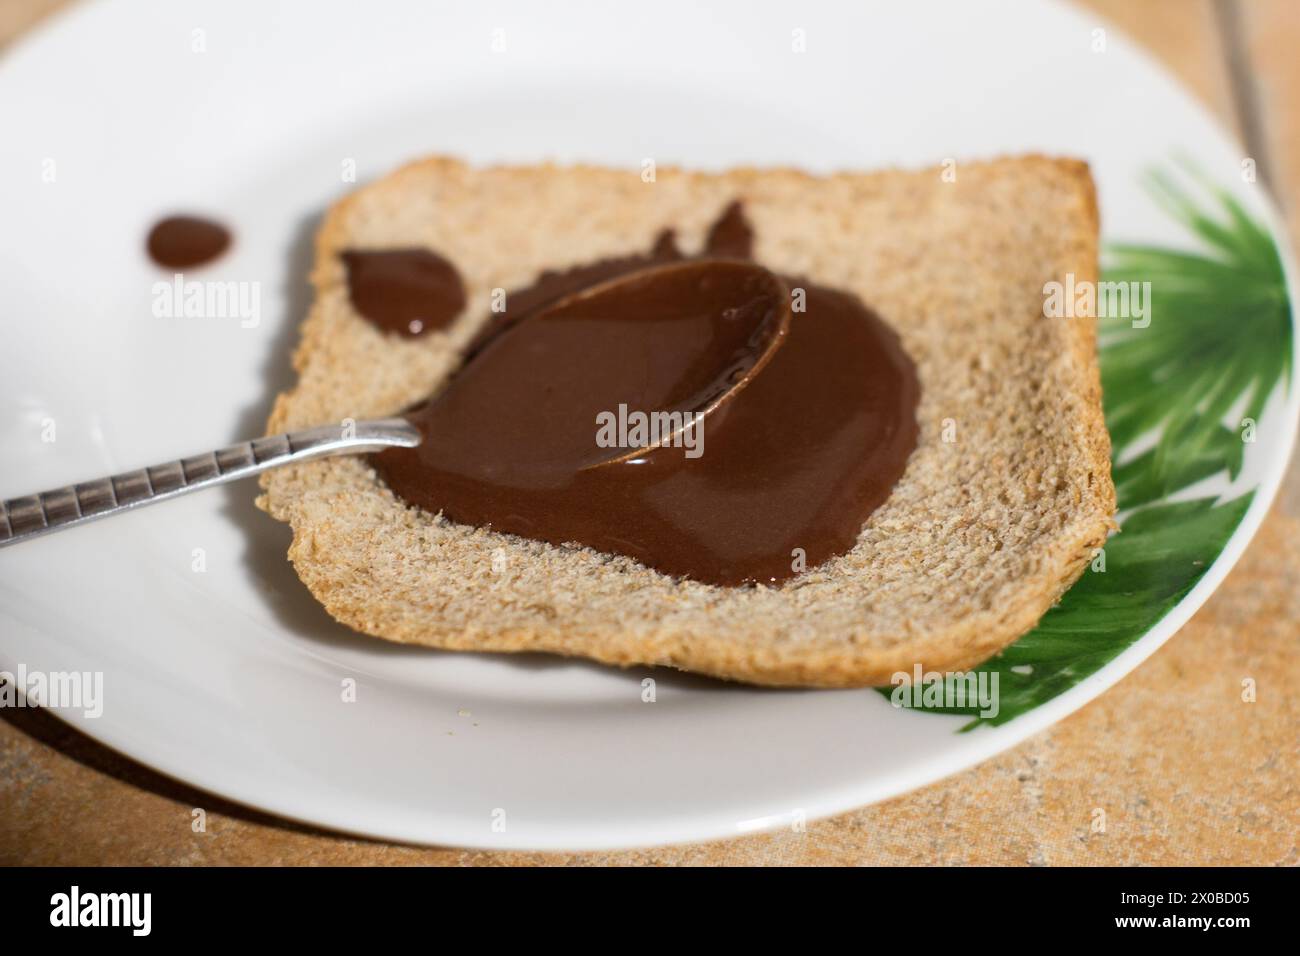 Ein Nahaufnahme-Bild, das den wunderbaren Moment des Verbreitens von reichhaltiger, cremiger Schokolade auf einer frischen Brotscheibe auf einem lebendigen Teller feststellt. H Stockfoto